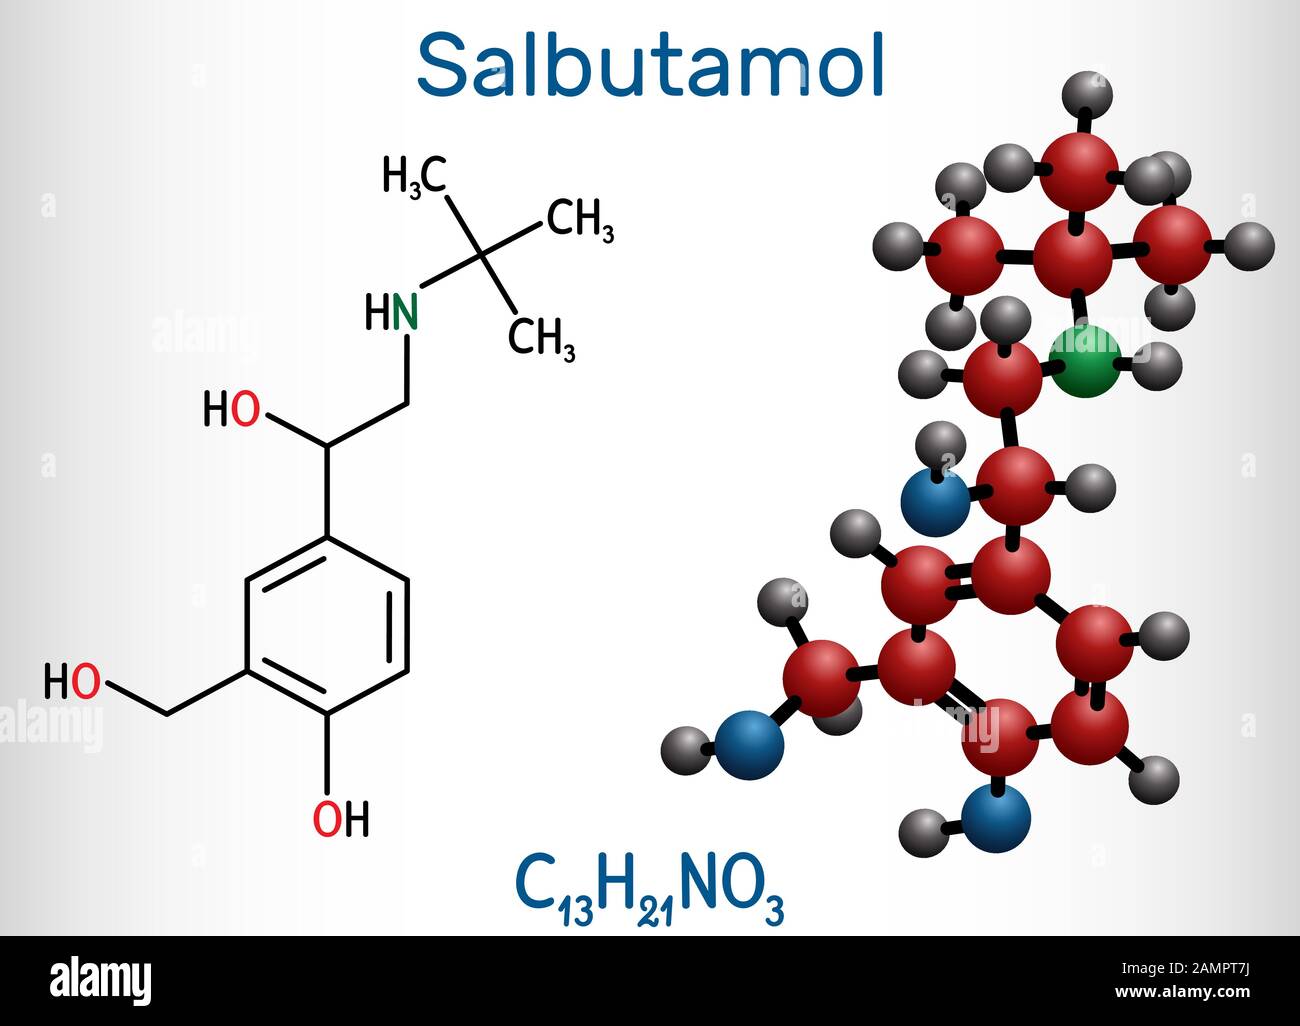 Salbutamol, Albumterol-Molekül. Es ist ein kurzwirkender Agonist, der bei der Behandlung von Asthma und COPD eingesetzt wird. Strukturelle chemische Formel und Molekularmodell. Stock Vektor